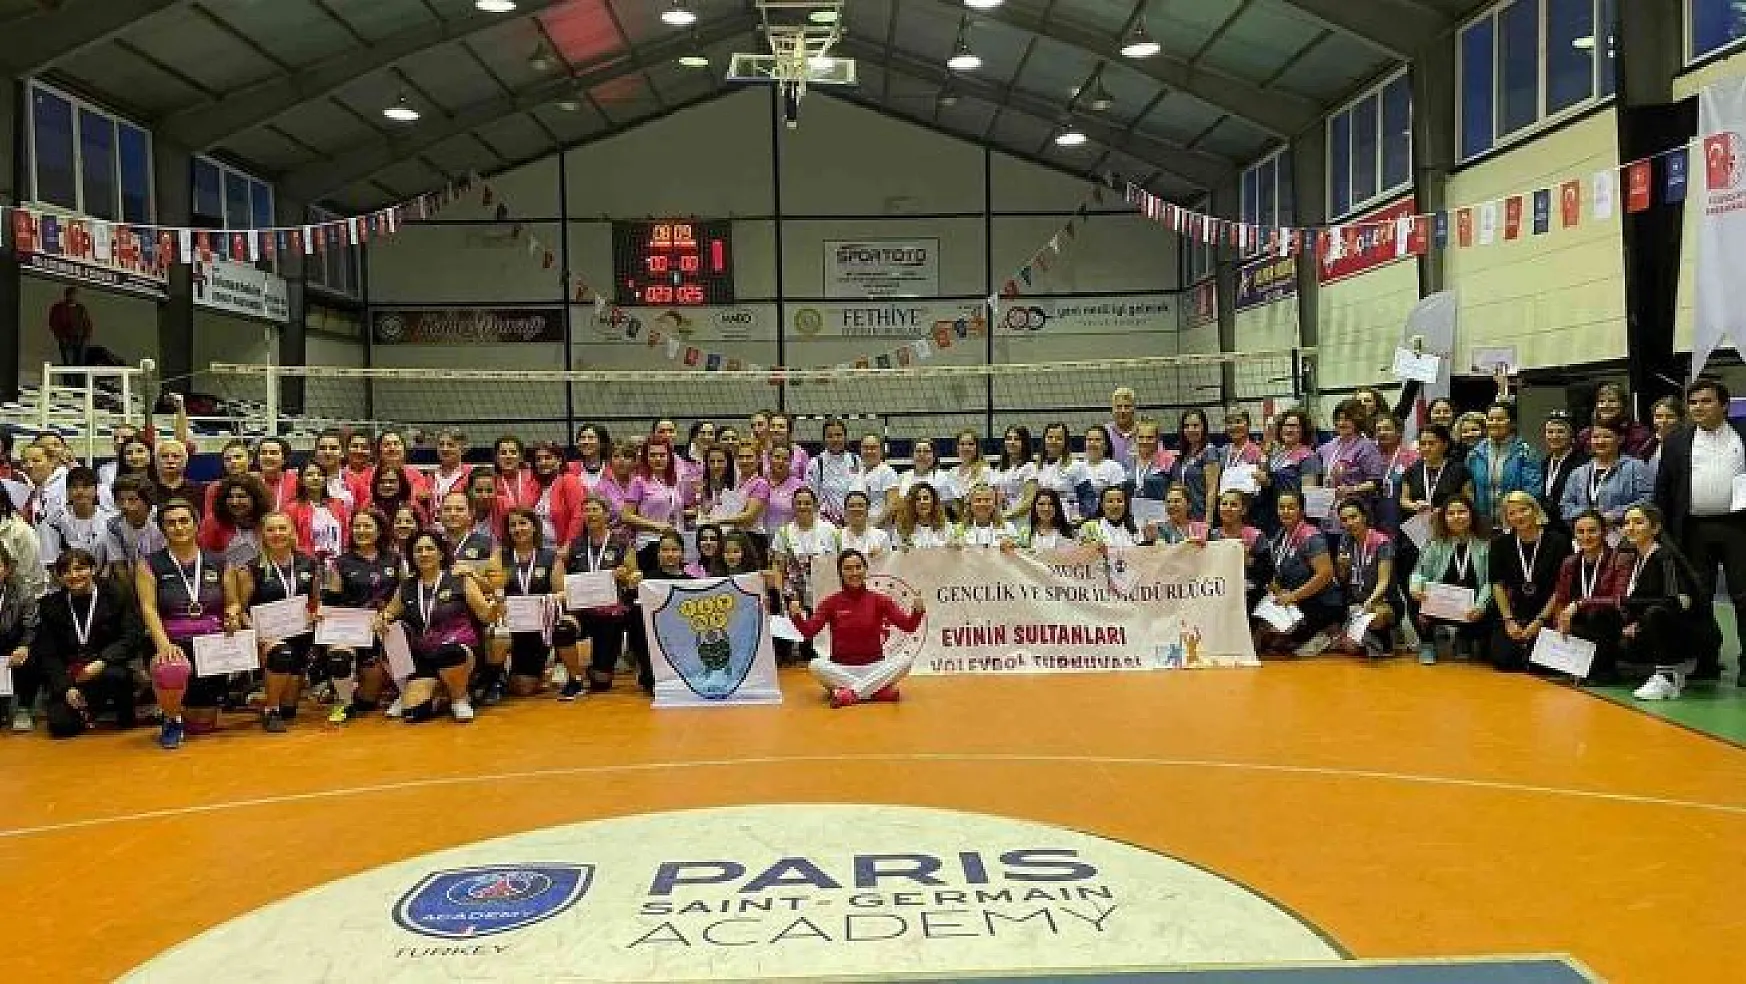 Evimin sultanları kadın voleybol turnuvasında Köyceğiz ikinci oldu